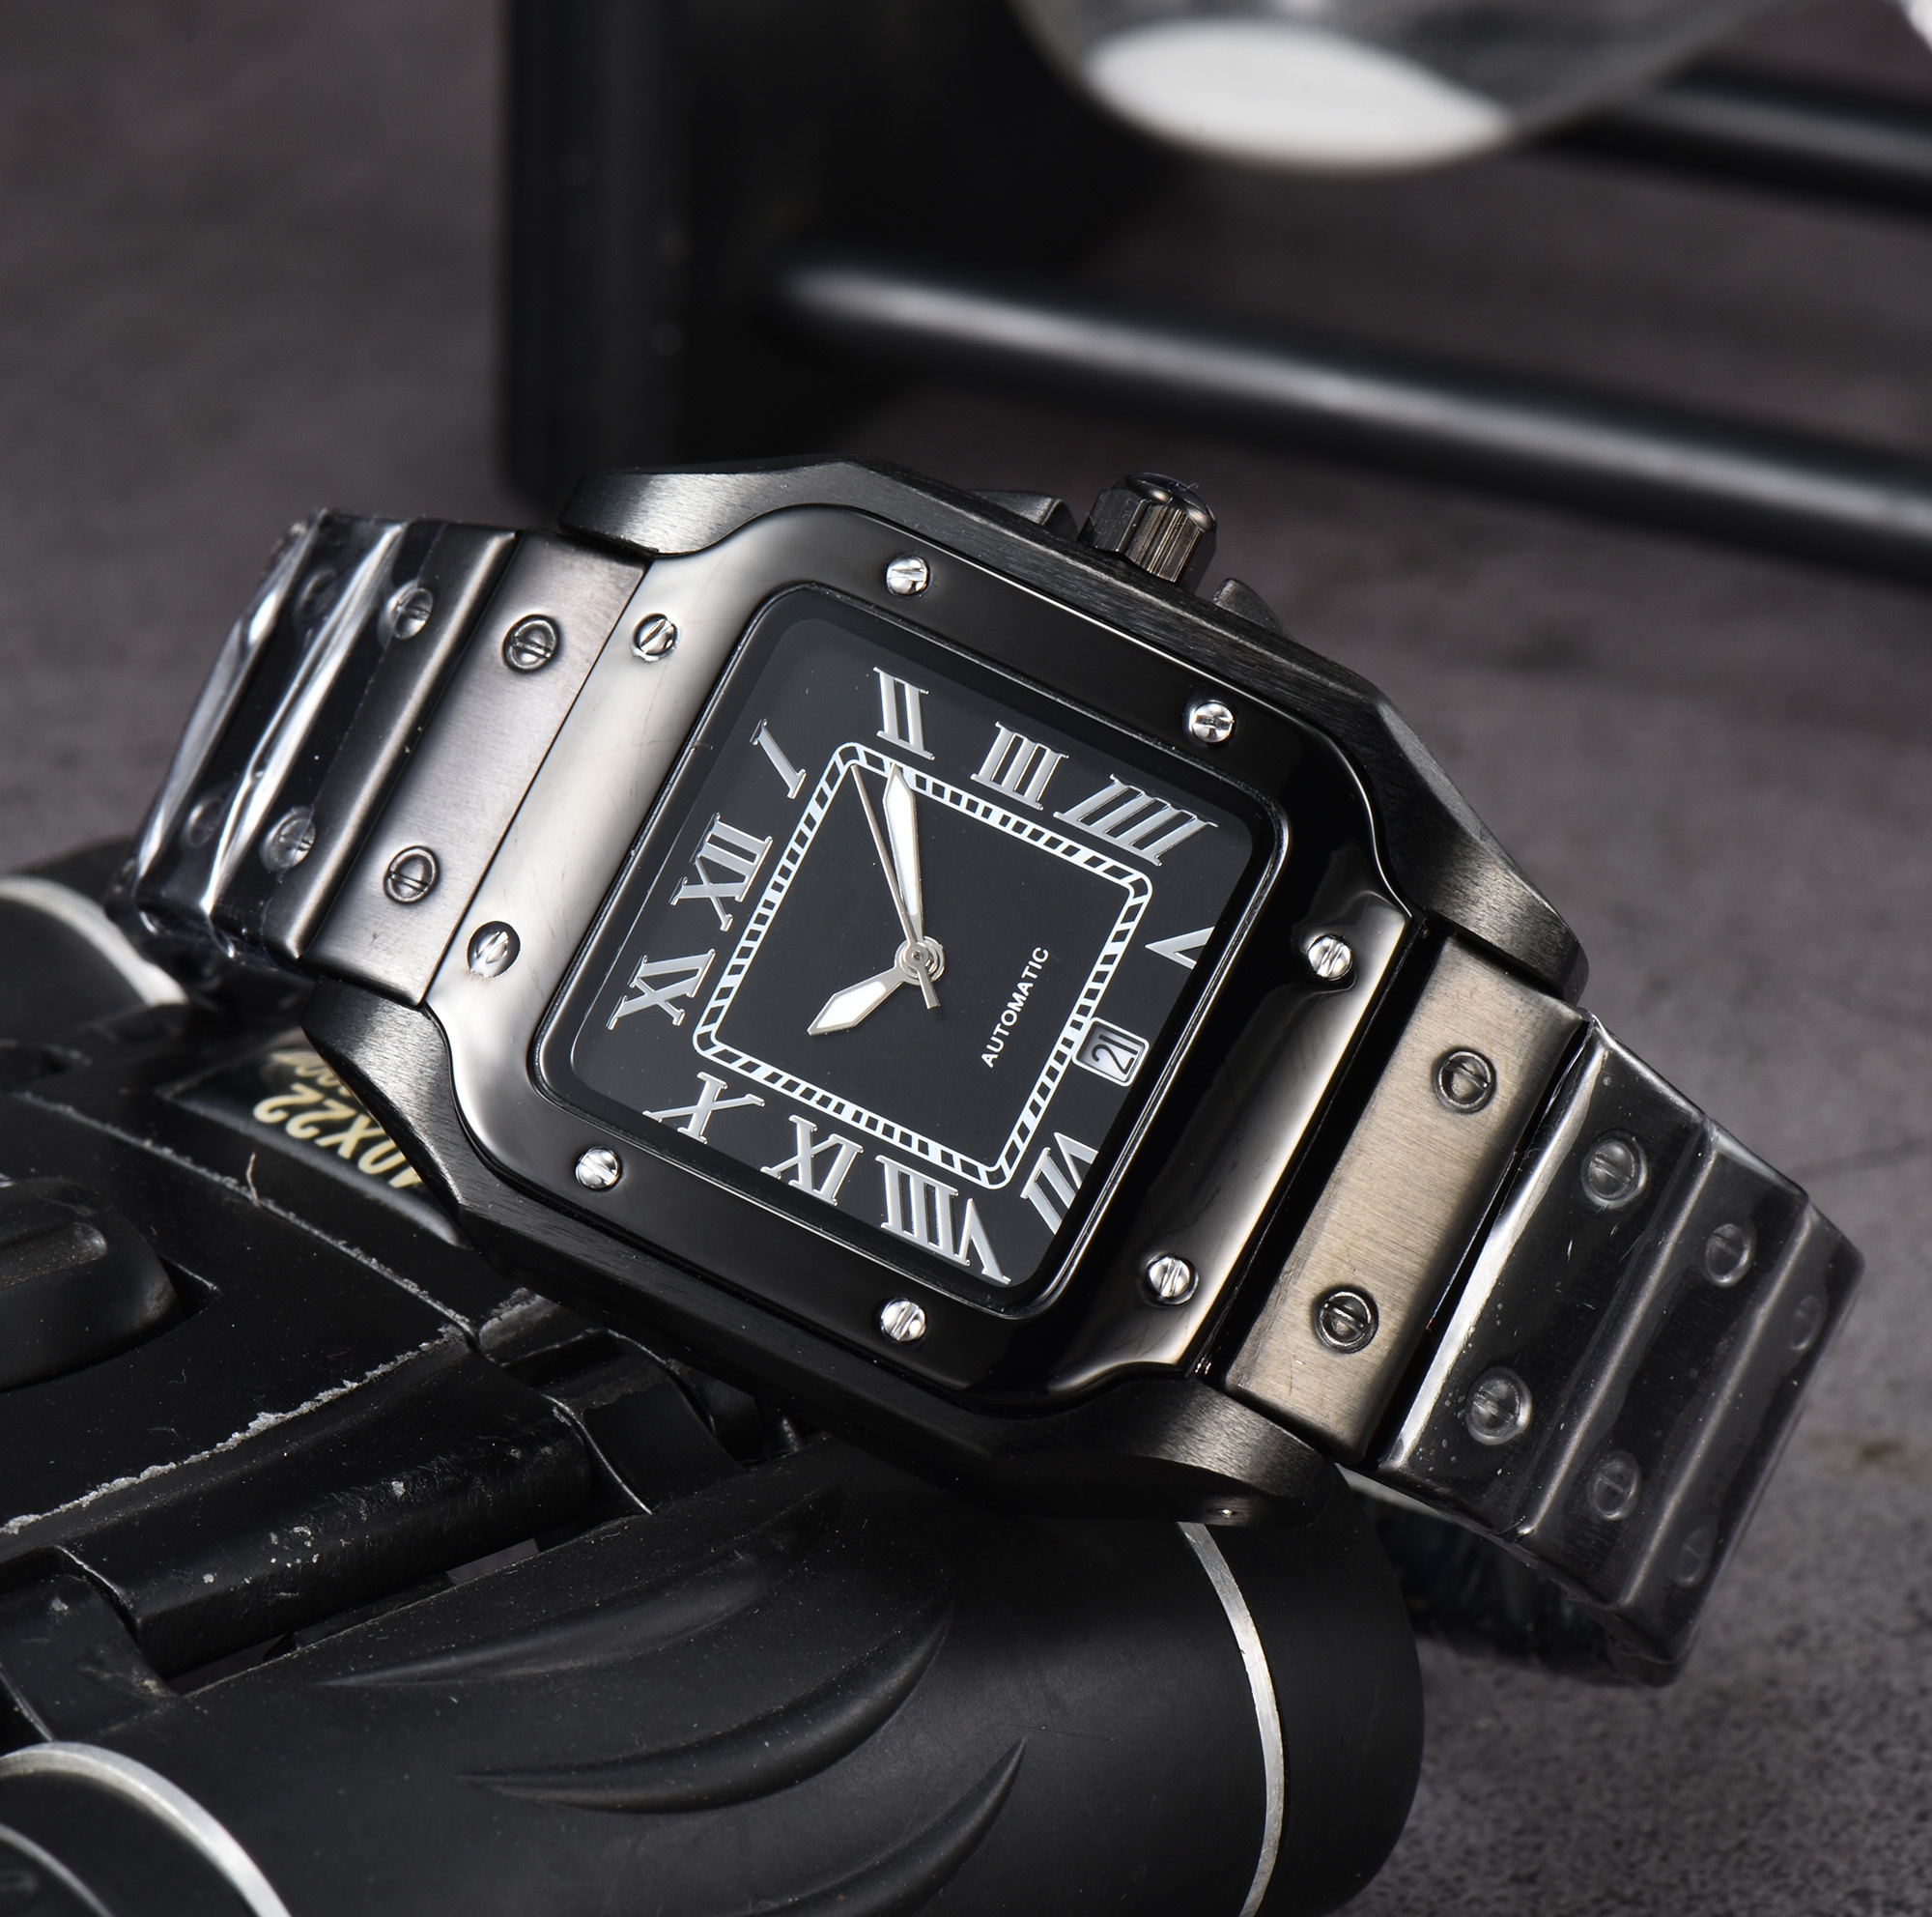 Горячие новые оригинальные часы для брендов для мужчин классические высококачественные многофункциональные кварцевые автоматические даты хронограф роскошь AAA+ часы